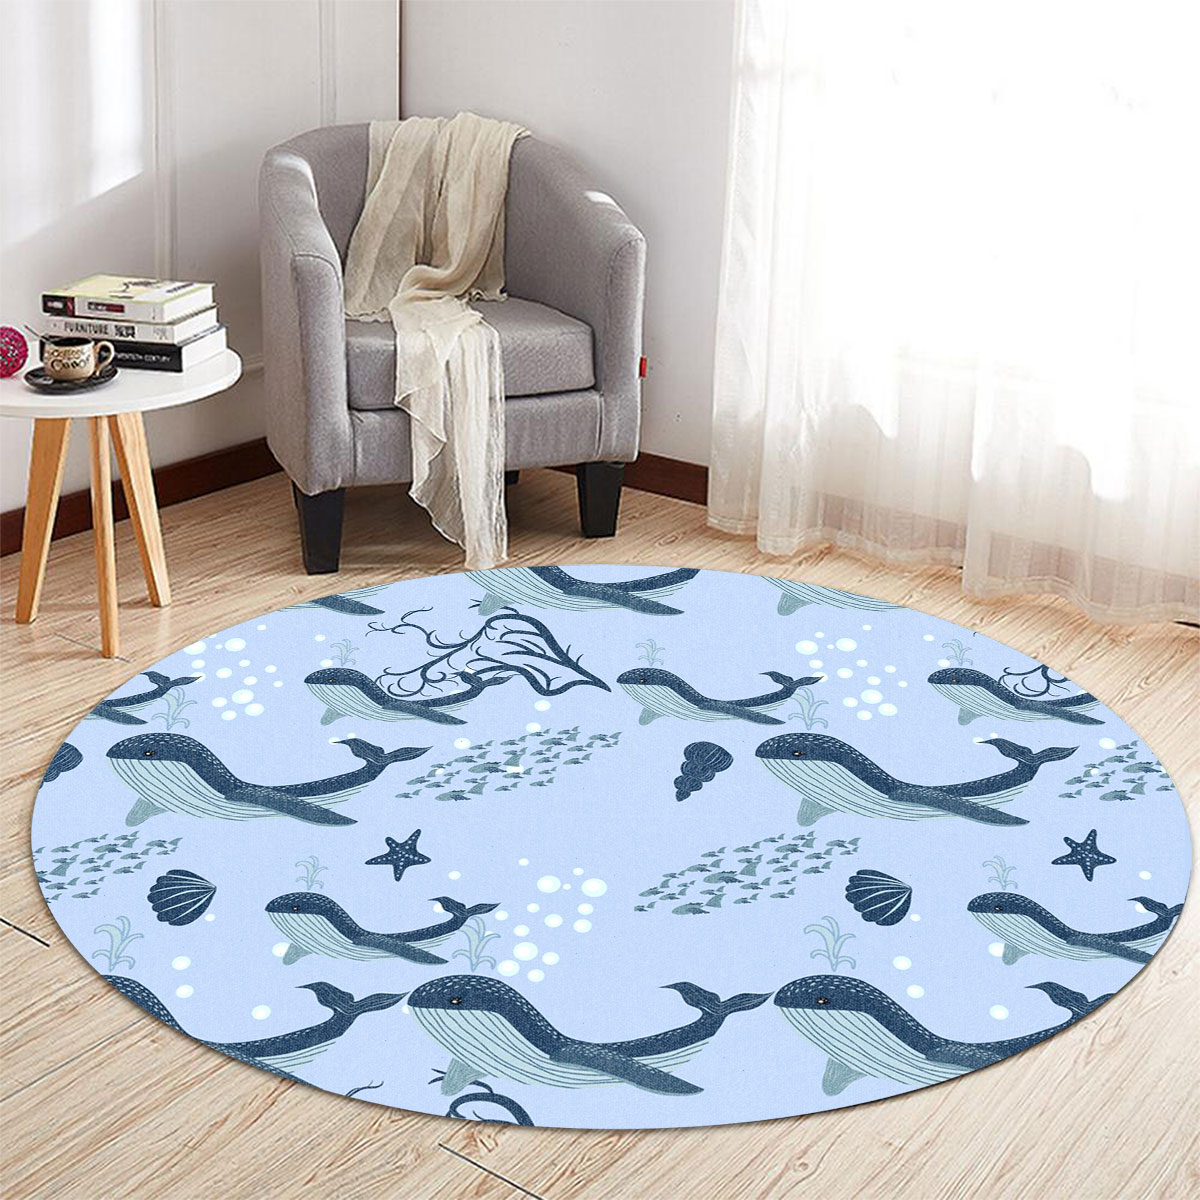 Cartoon Cute Blue Whale Round Carpet